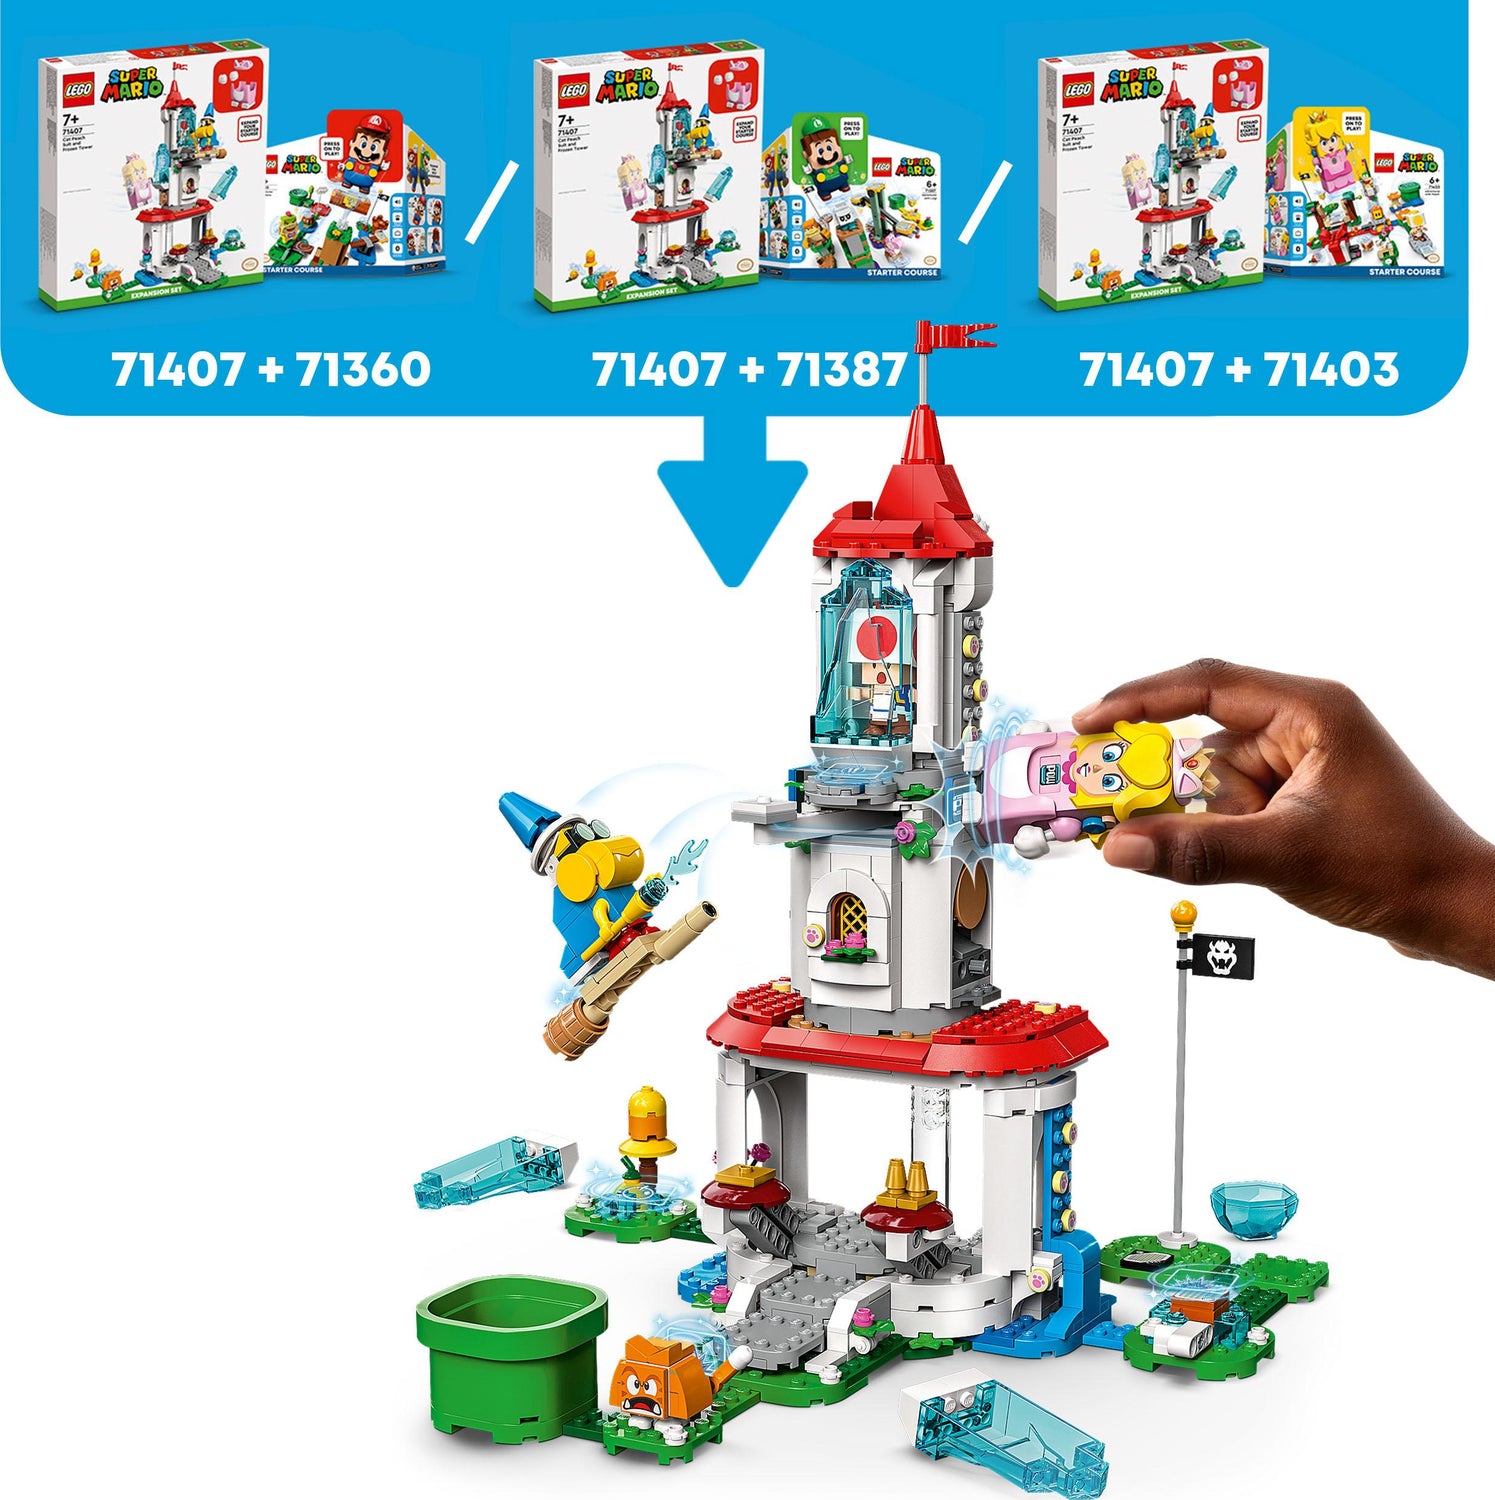 LEGO® Super Mario Cat Peach Suit & Tower Set